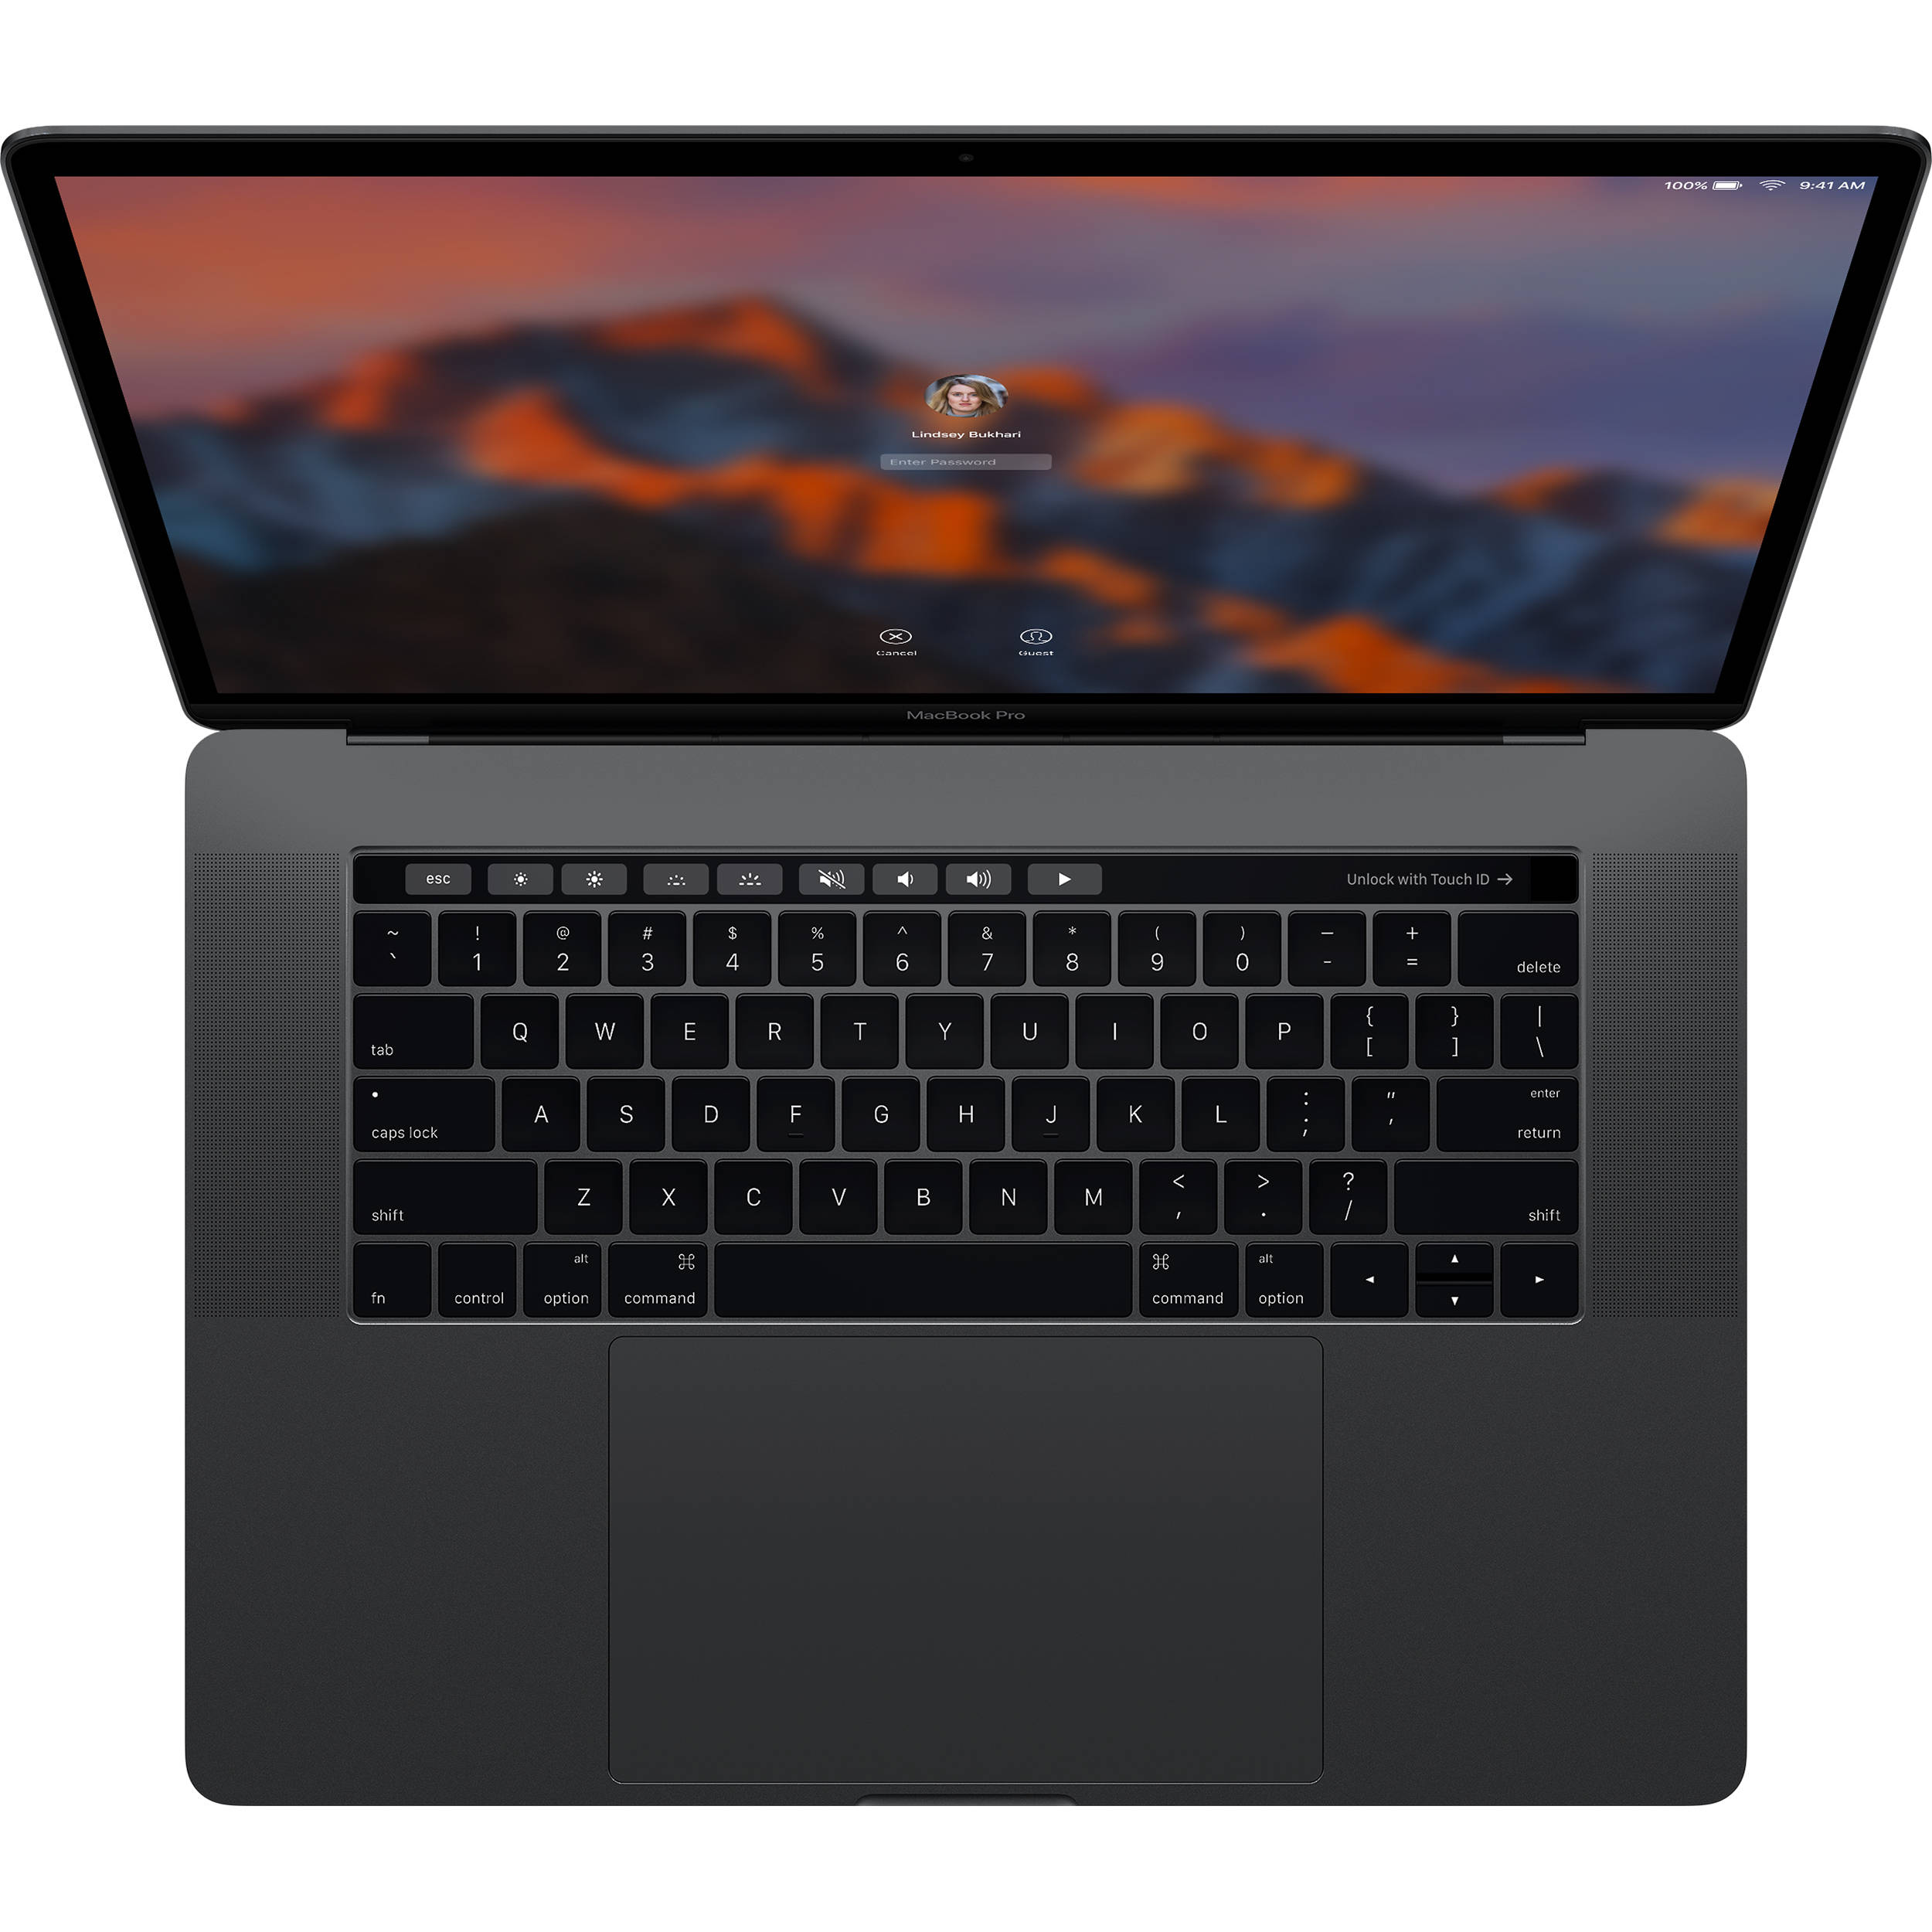 MPTT2- Macbook Pro 2017 15 inch Quad I7 3.1Ghz 16GB 1TB New 99%